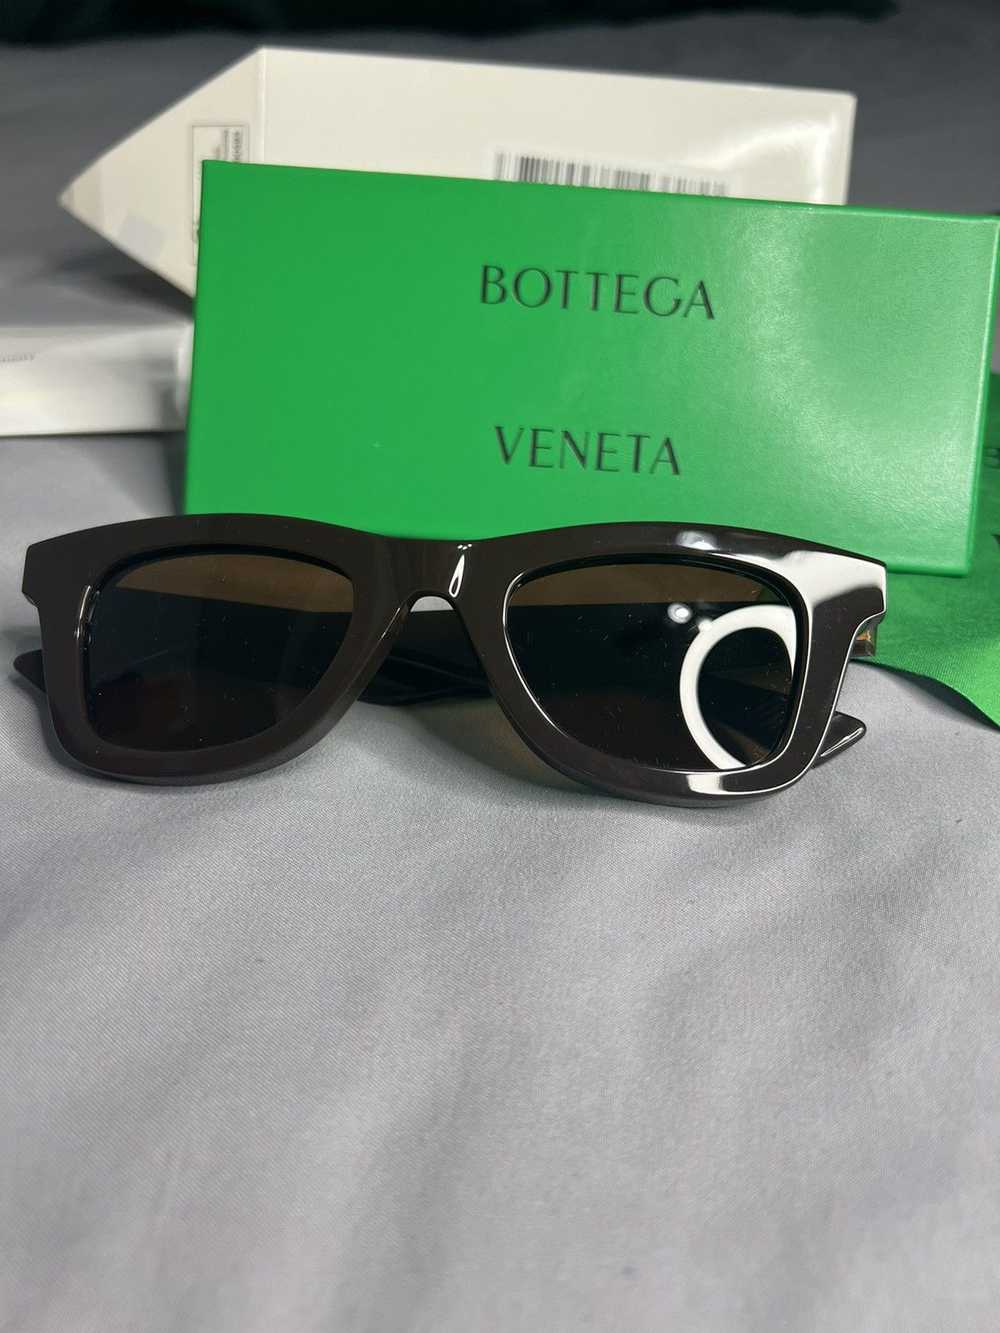 Bottega Veneta Bottega Veneta Sunglasses - image 2